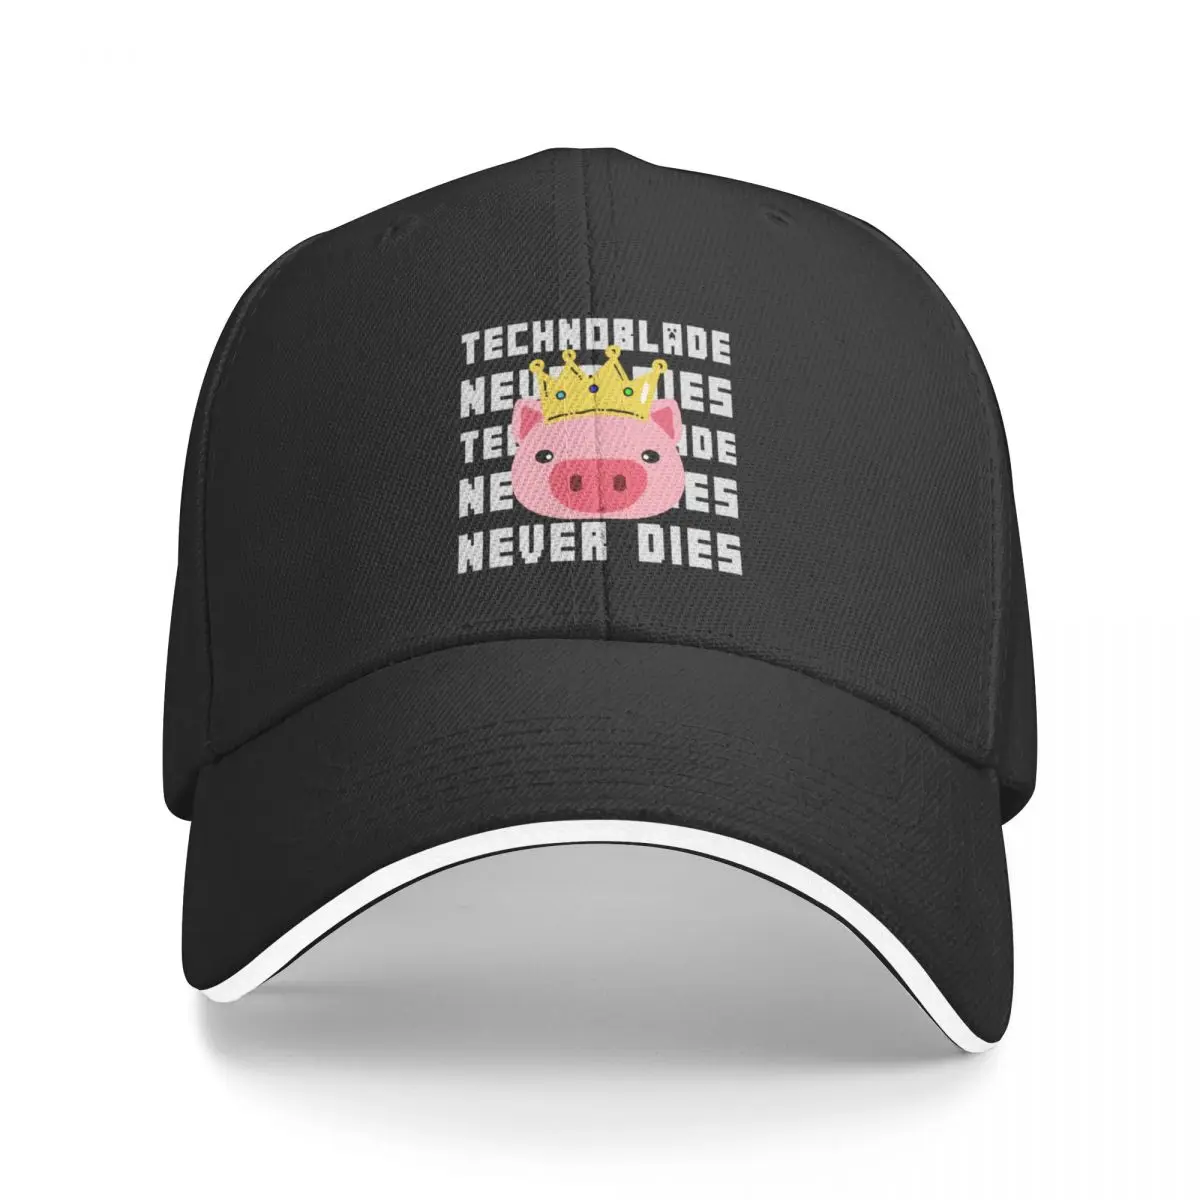 

Technoblade never dies Cap Baseball Cap thermal visor Caps men's hat luxury Women's